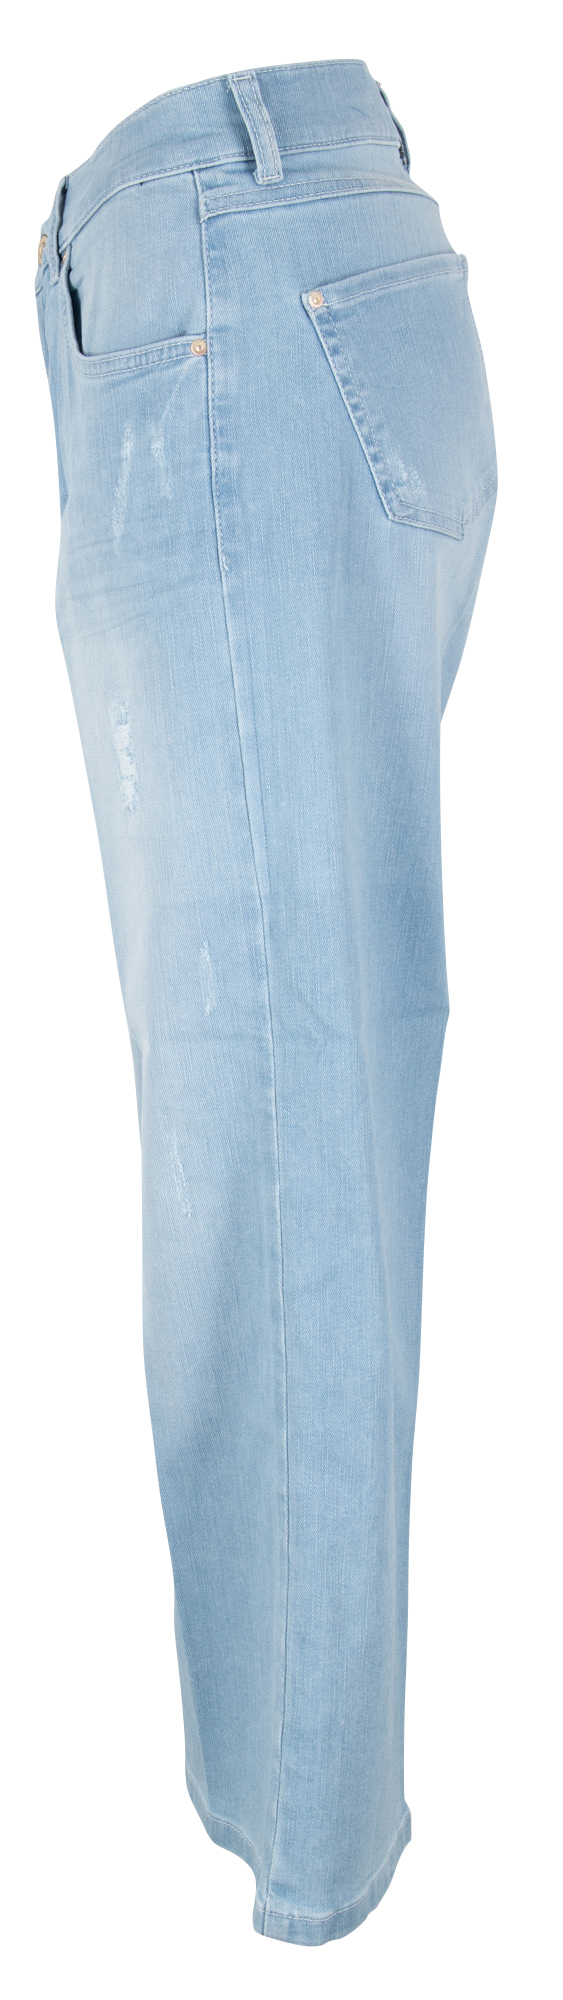 Angels Damen Jeans Stretch Damen blau bei kaufen 7/8 bequem online Jeans Linn